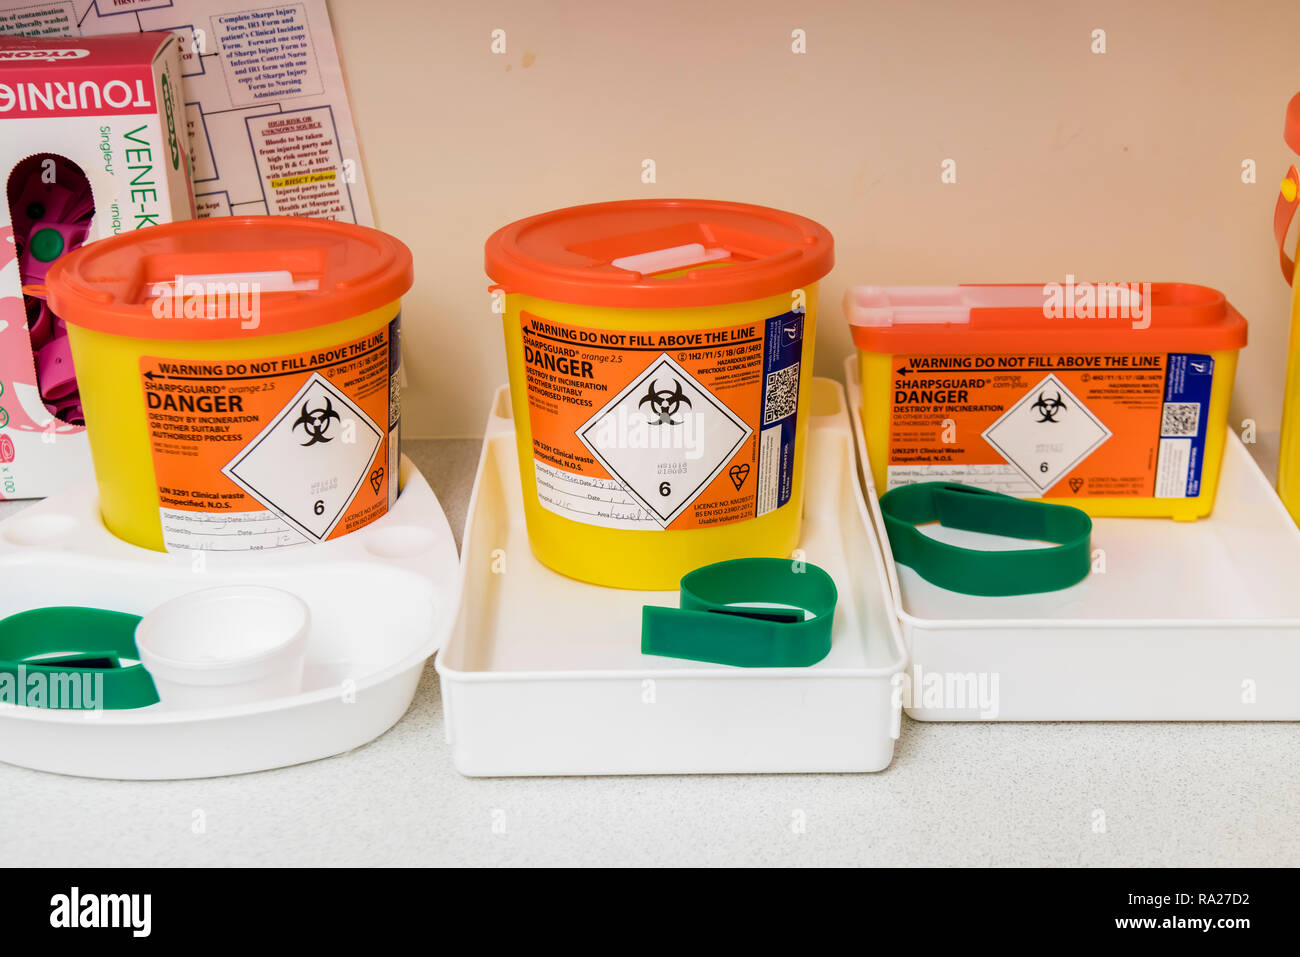 Configurar las bandejas para tomar muestras de sangre incluidos sharps cajas, torniquetes y bolas de algodón. Foto de stock